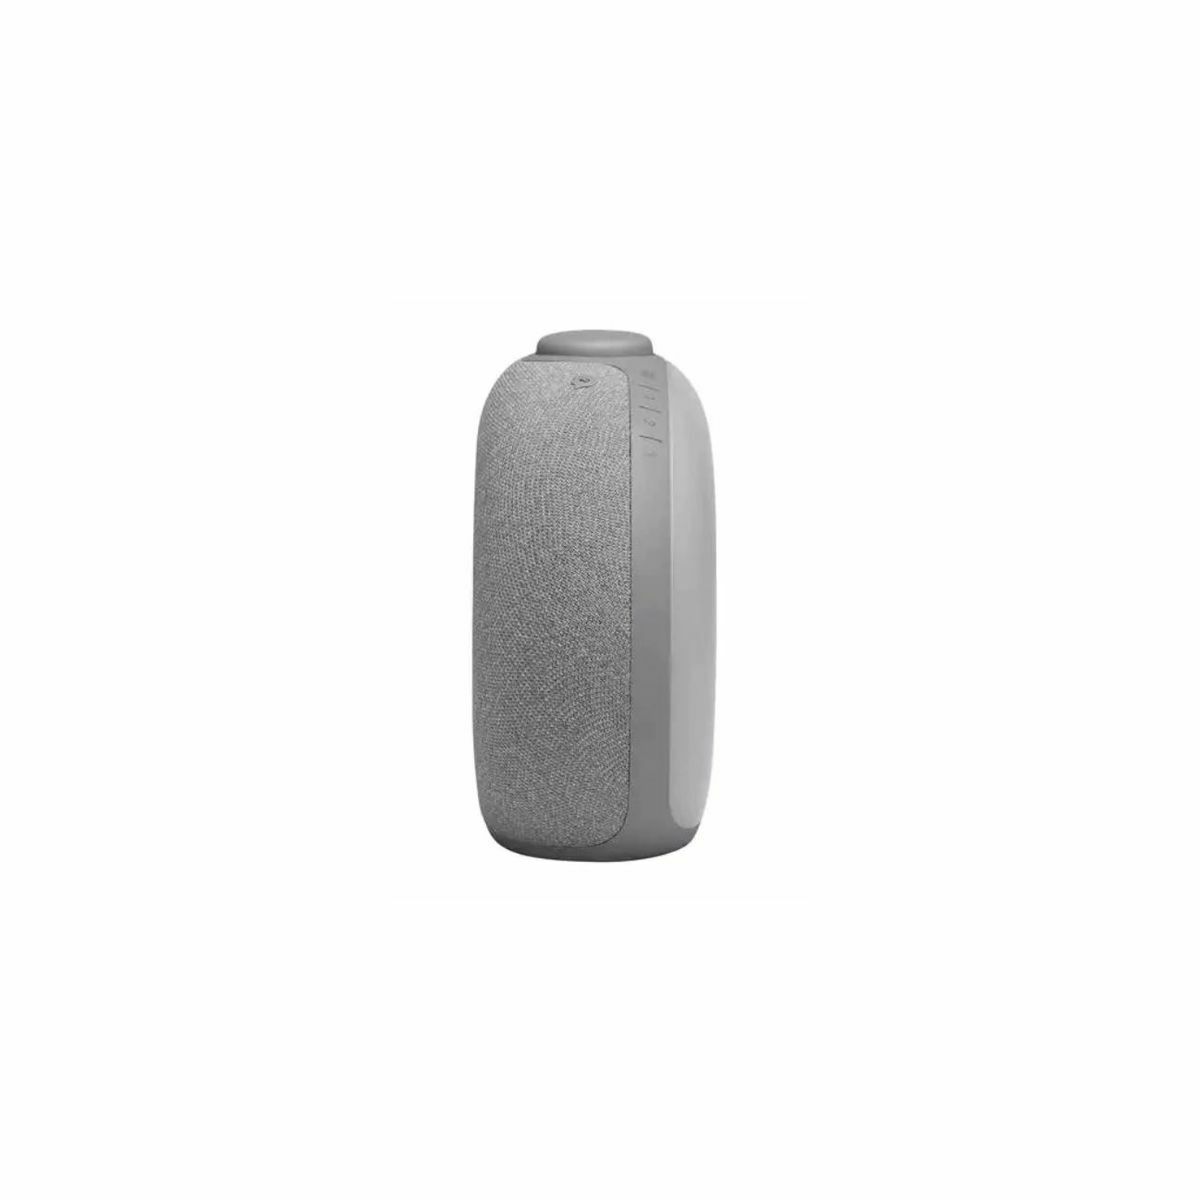 Kép 2/4 - JBL Horizon 2 hordozható Bluetooth hangszóró ébresztőórával, szürke EU